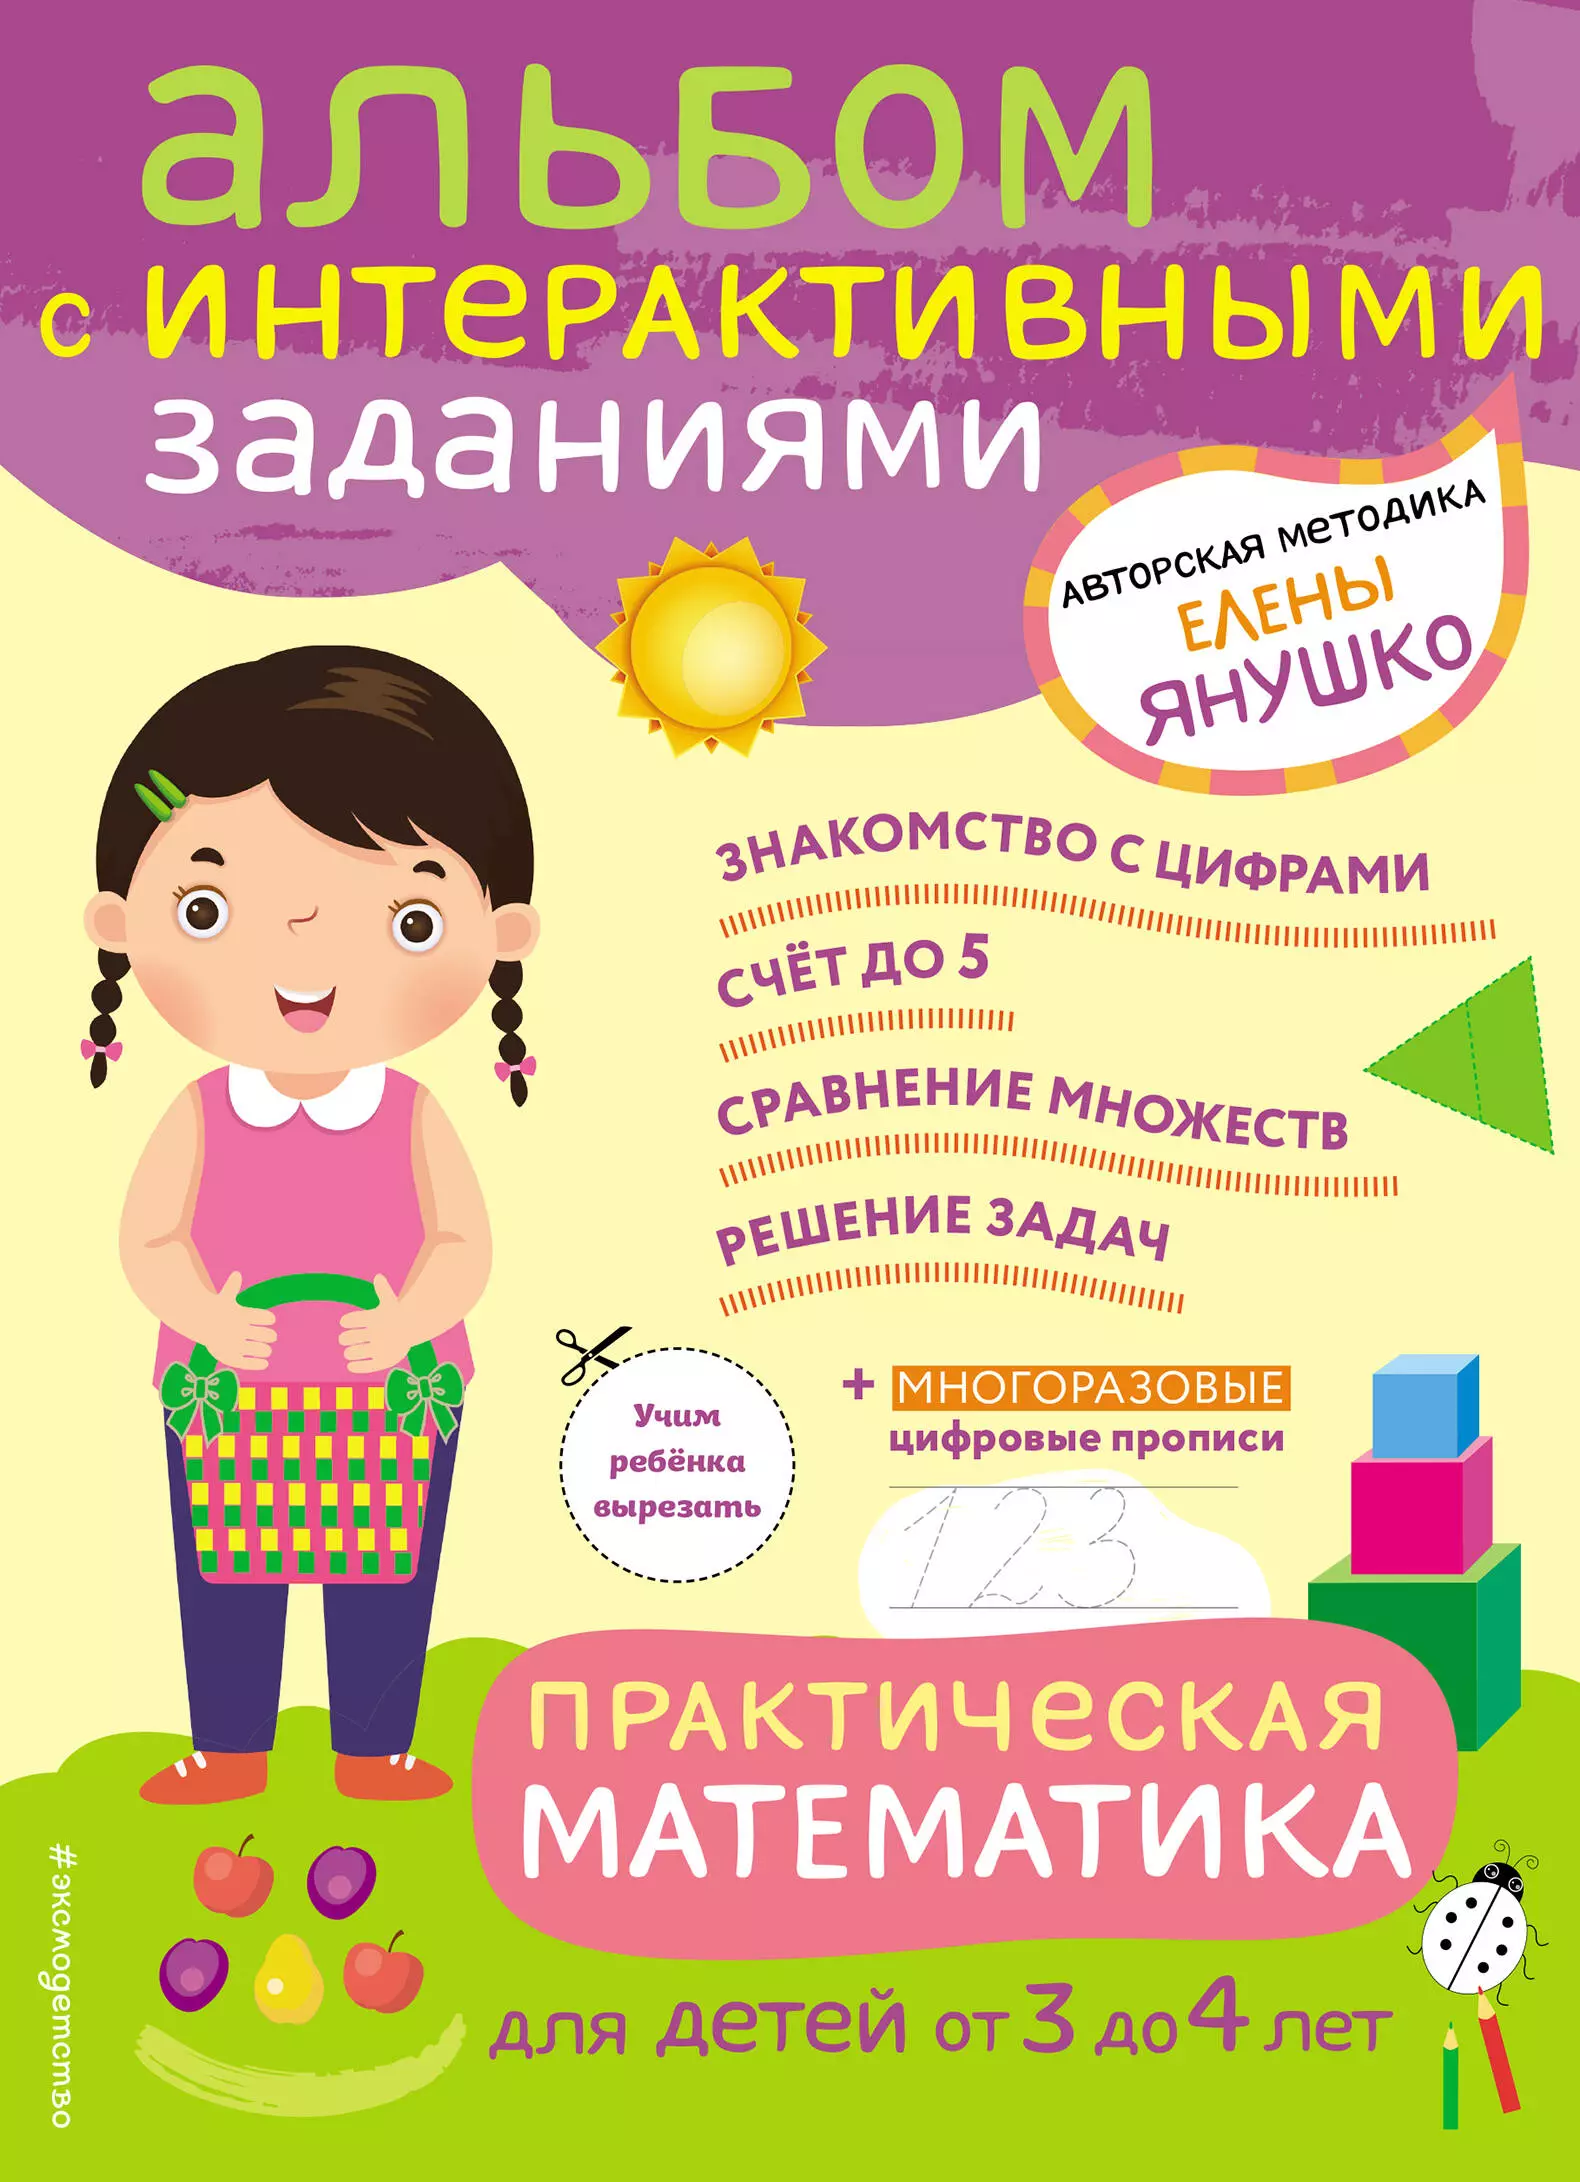 Янушко Елена Альбиновна Практическая математика. Игры и задания для детей от 3 до 4 лет